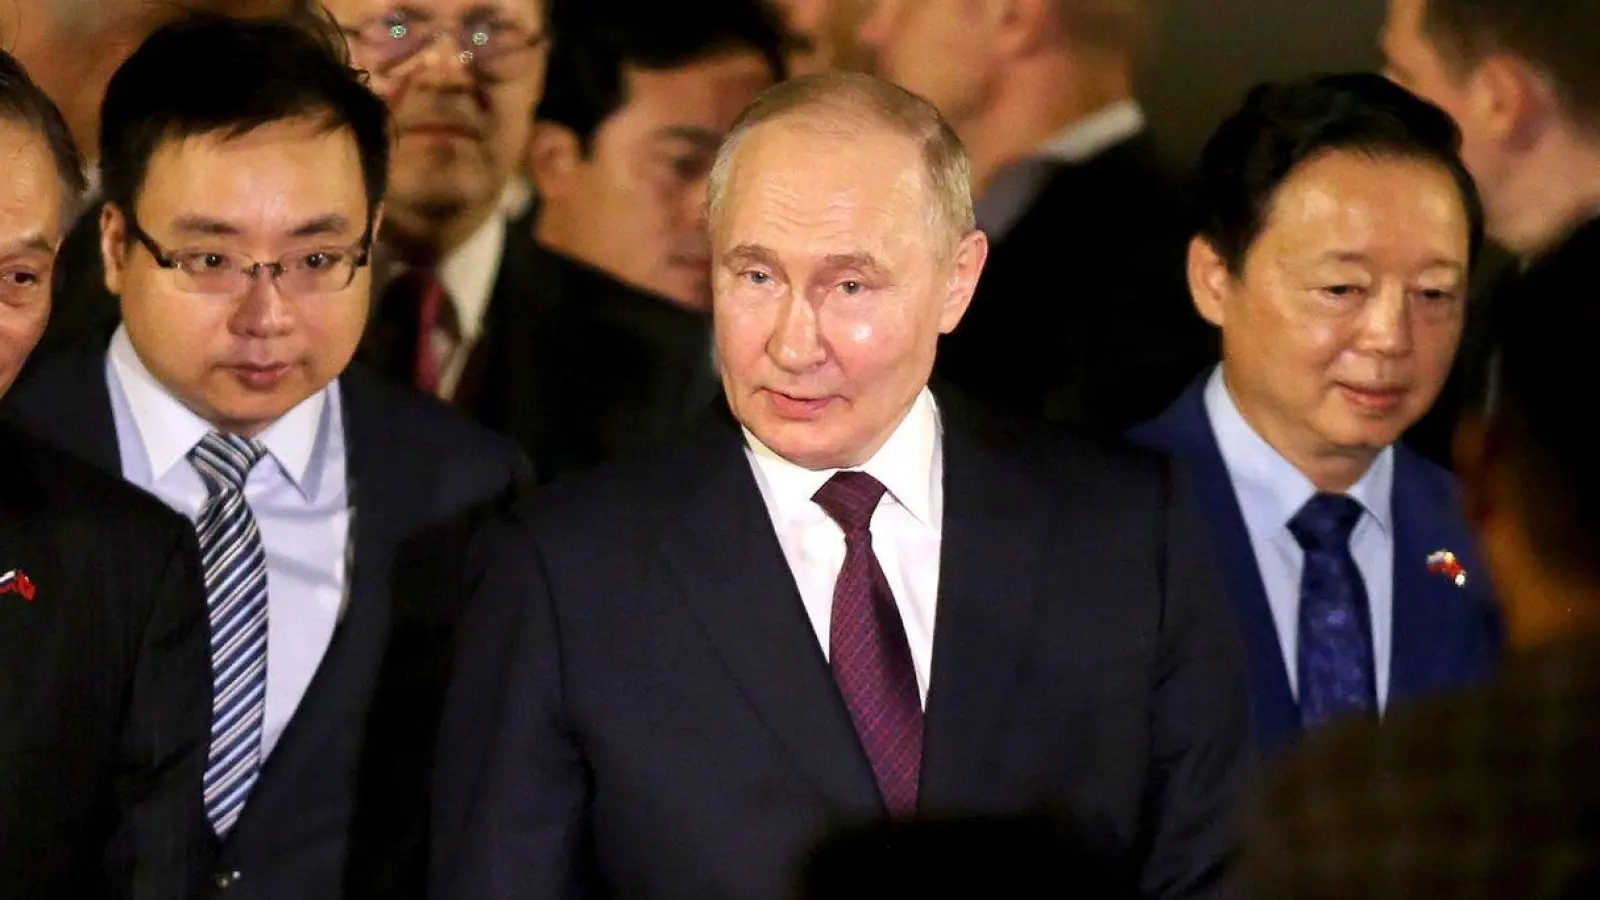 Der russische Präsident Wladimir Putin, der im Westen wegen seines Angriffskriegs gegen die Ukraine mit Sanktionen belegt ist, sucht nach Partnern im Osten. (Foto: Minh Hoang/AP/dpa)